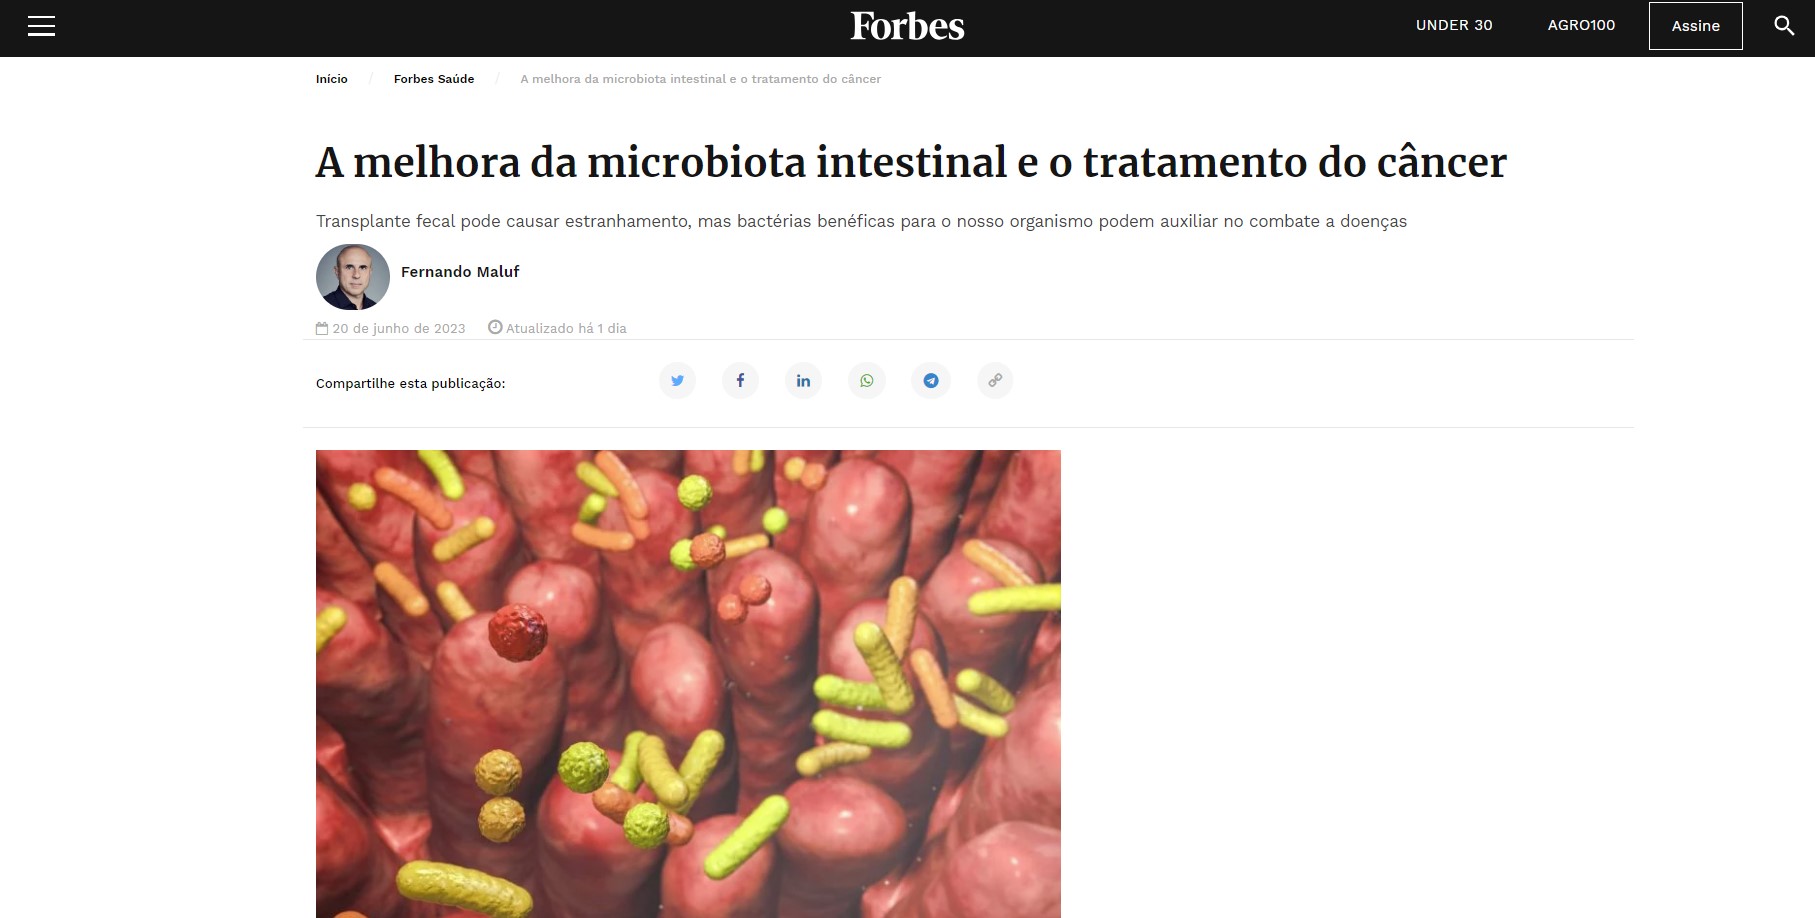 A microbiota intestinal e o tratamento do câncer